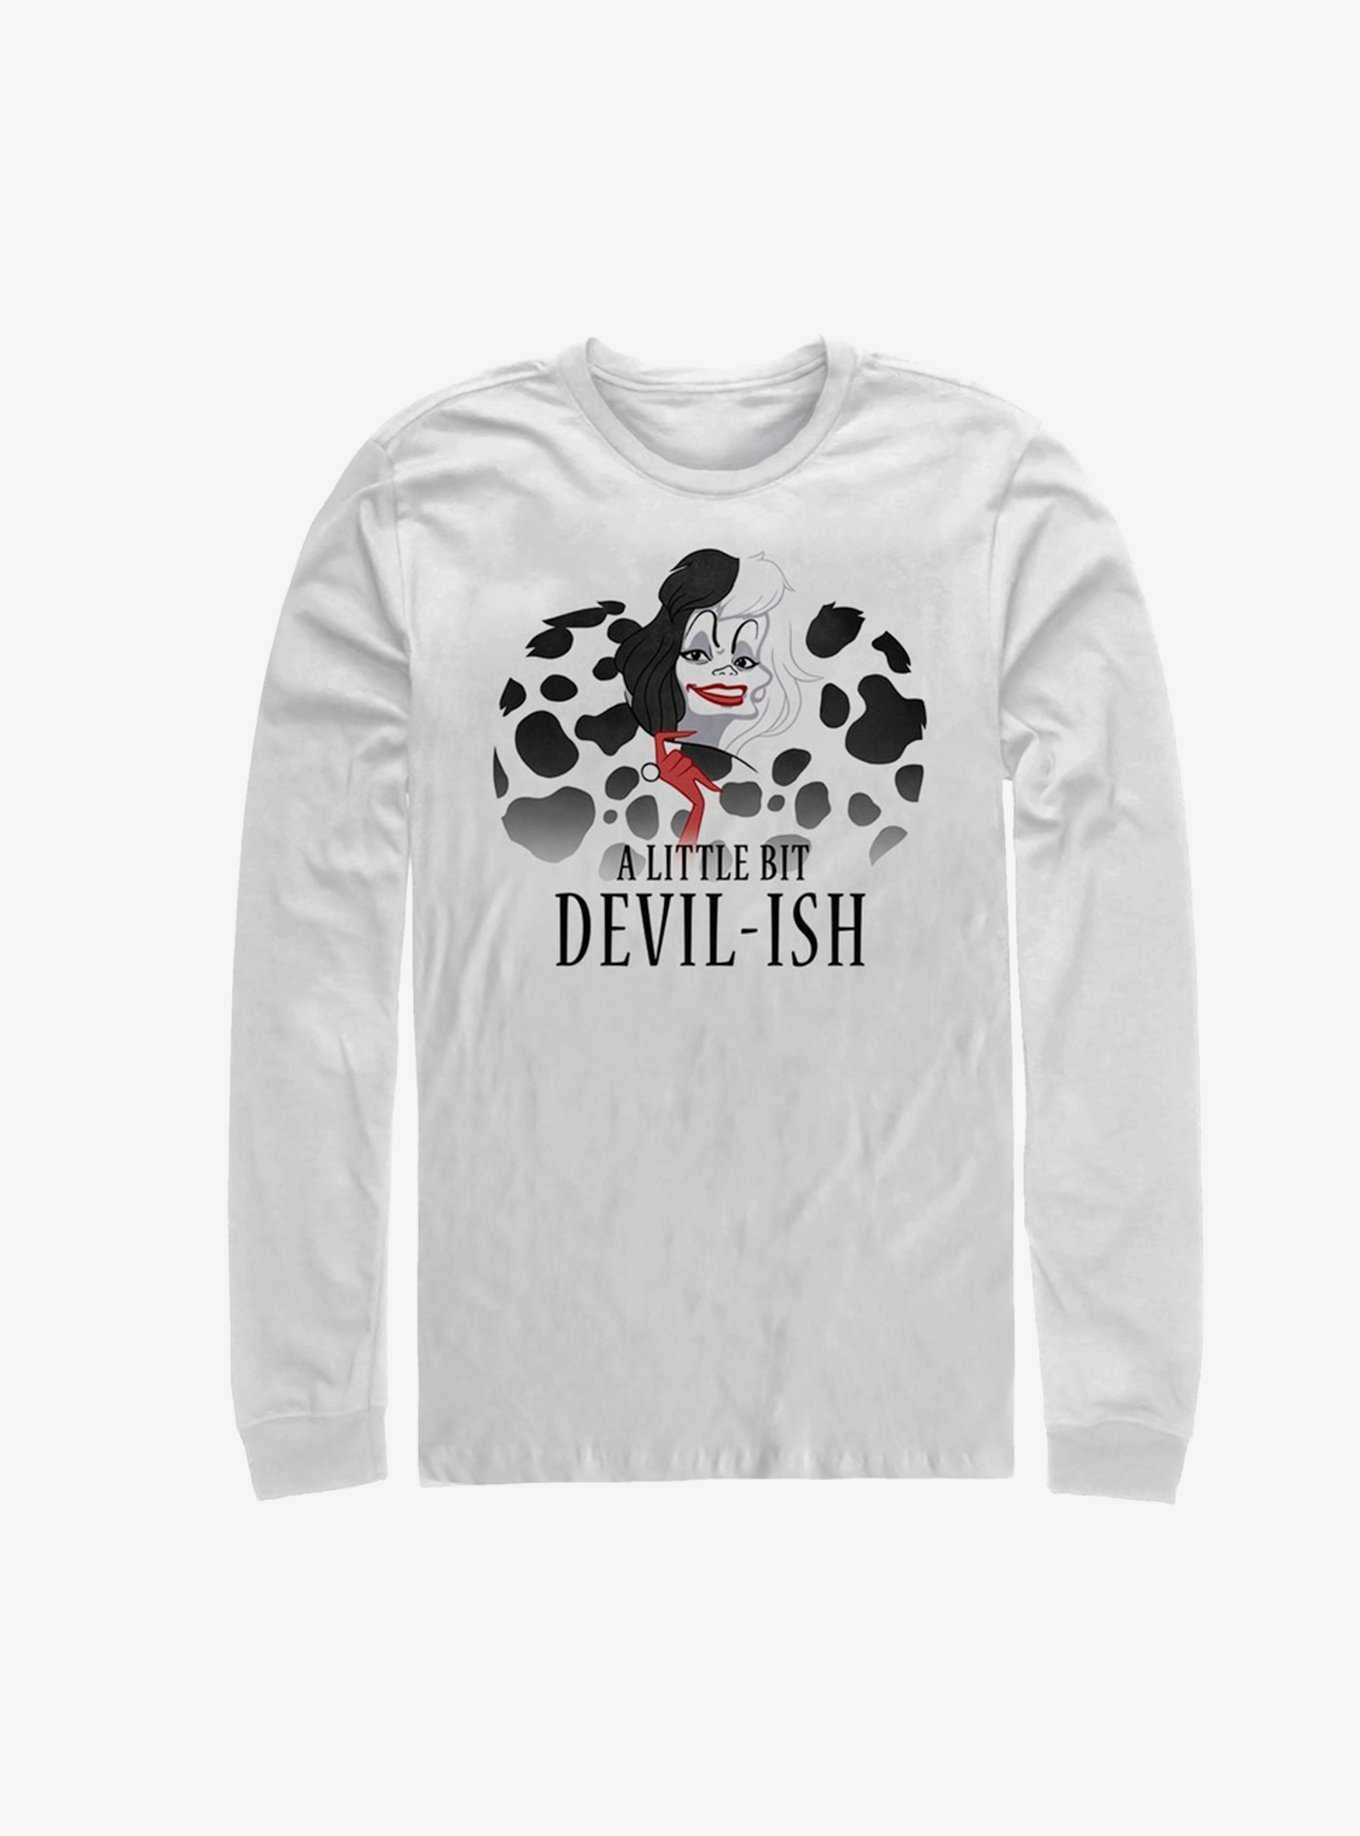 Disney Villains Cruella De Vil Devil-ish Long-Sleeve T-Shirt, , hi-res